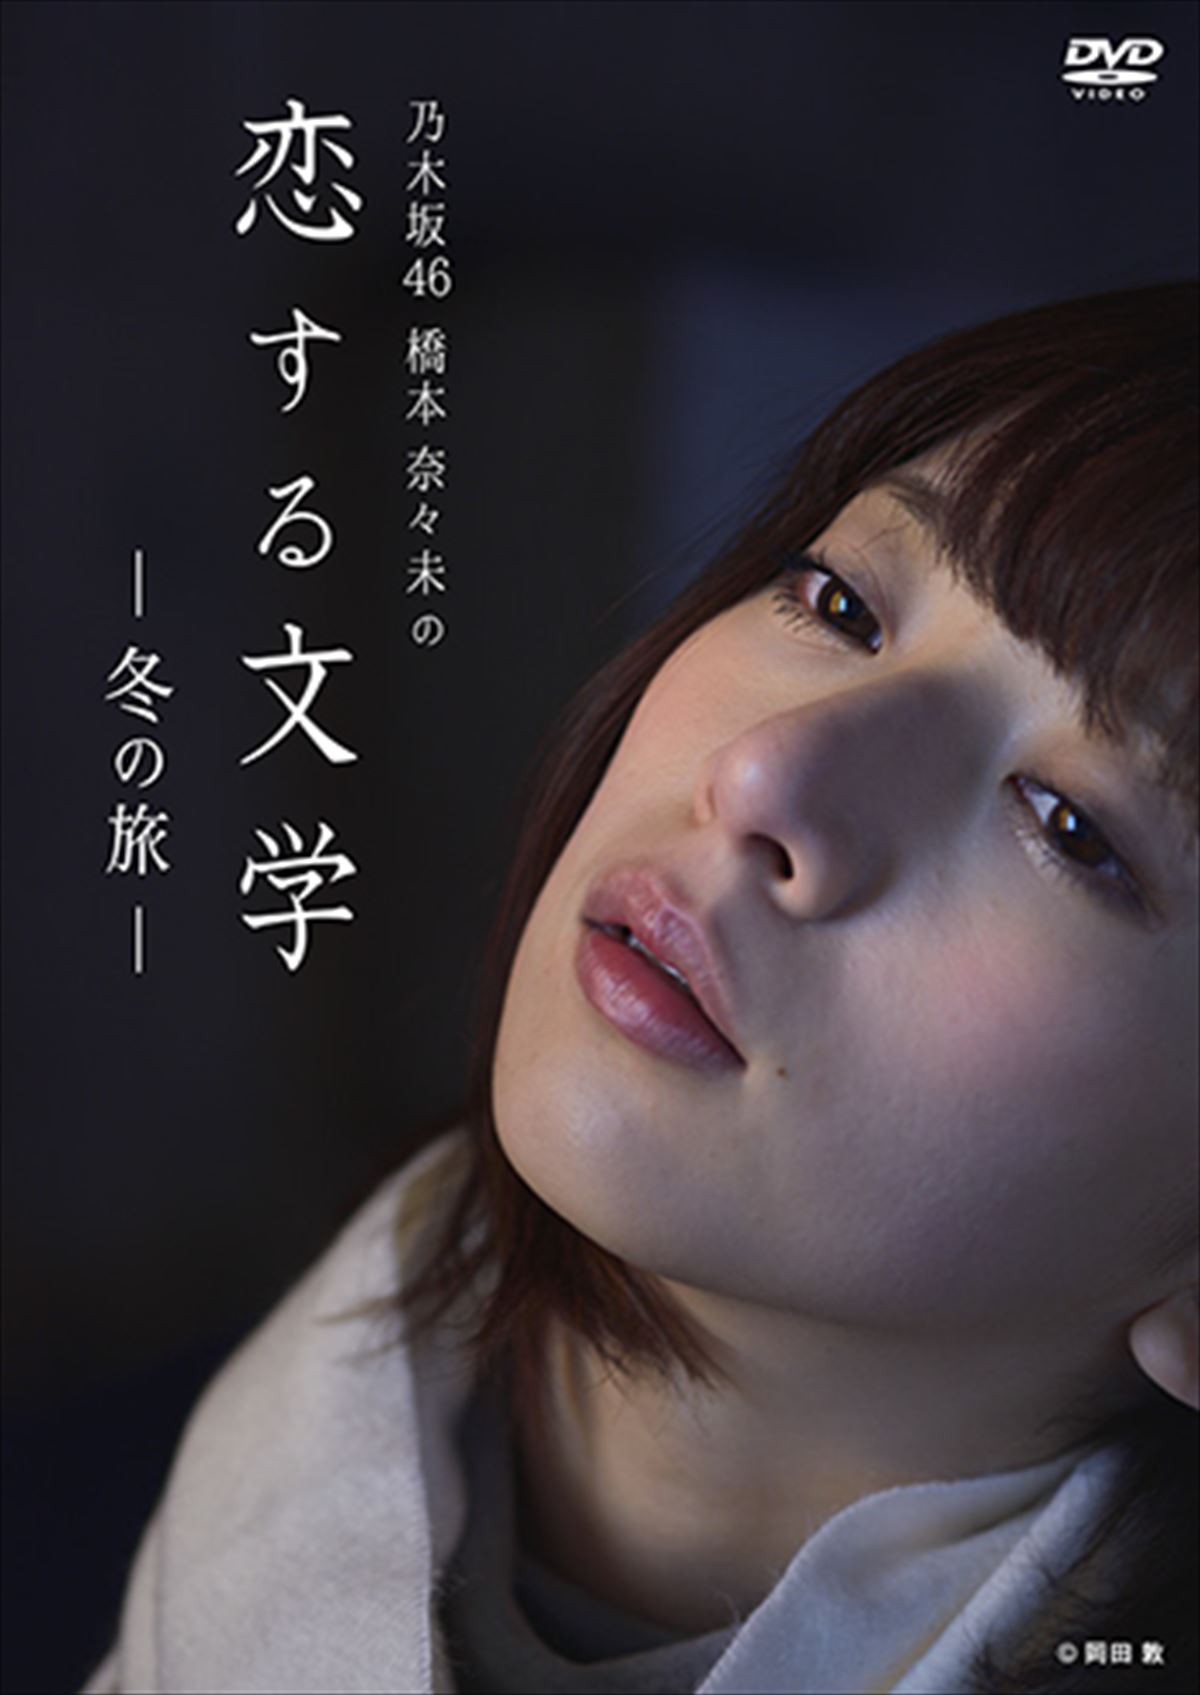 芸能界引退表明の橋本奈々未、心の軌跡を記録した『恋する文学』DVDジャケット公開